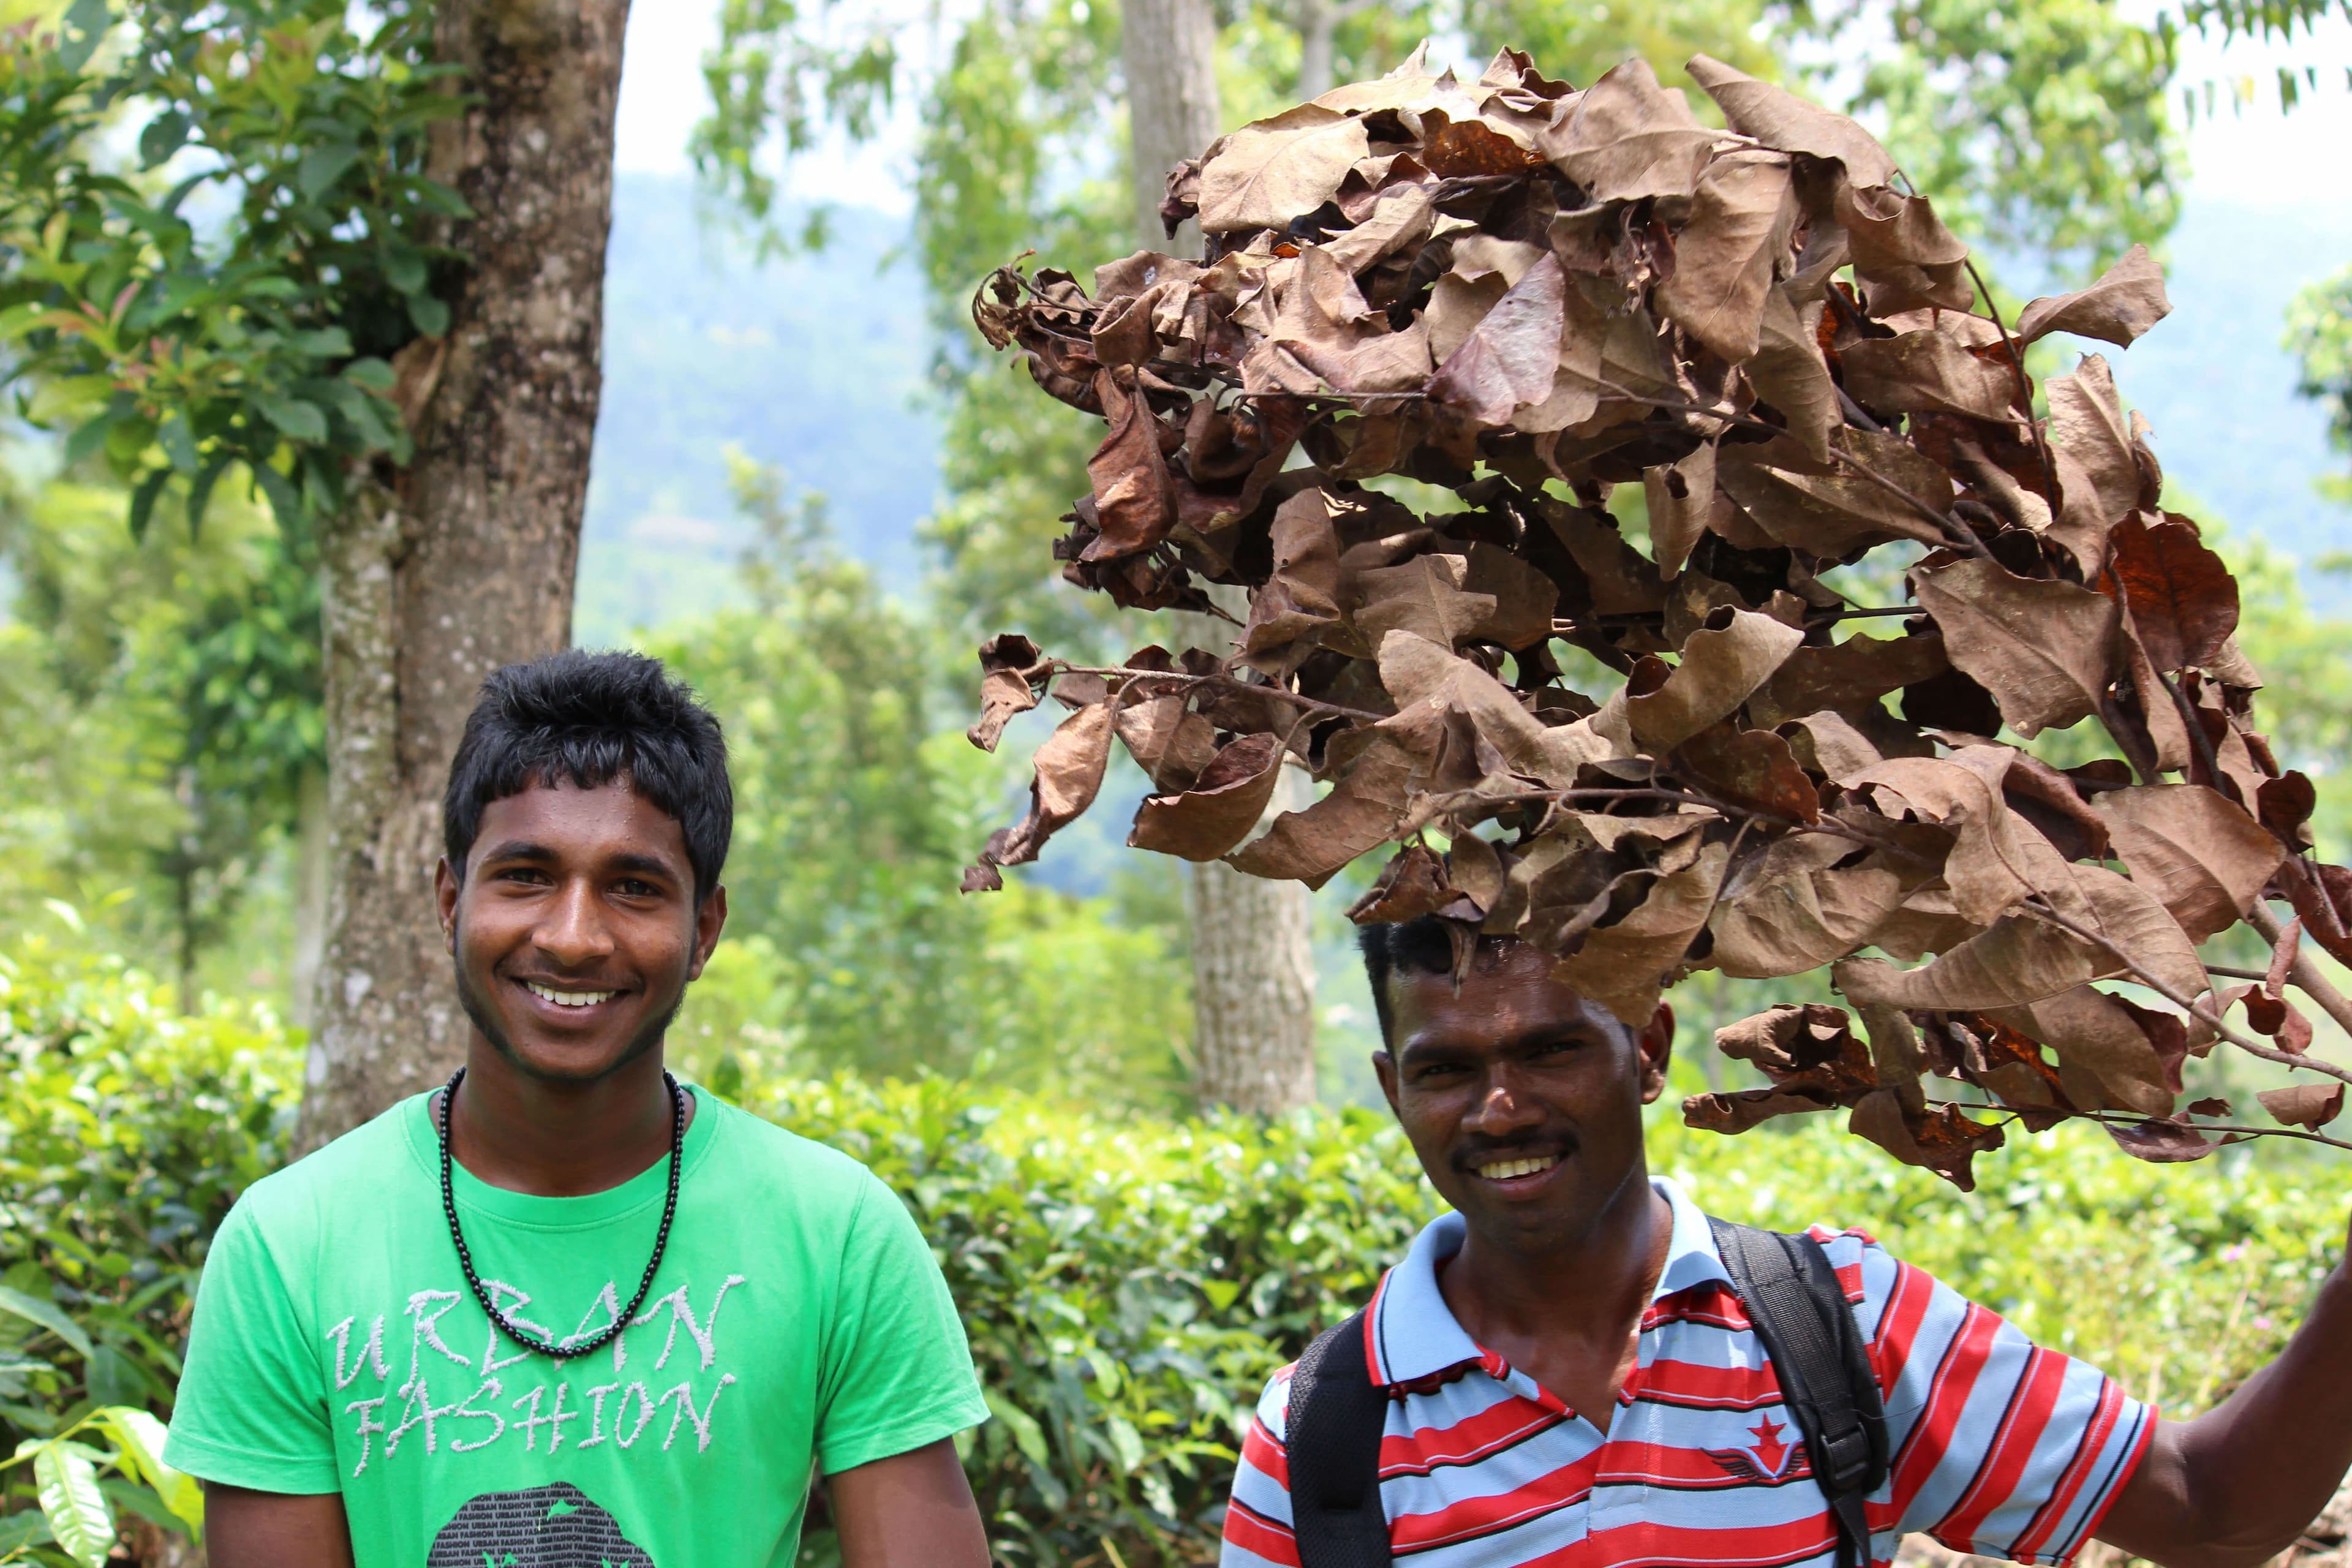 قابل السكان المحليين السعداء في رحلة التنزه سيرًا على الأقدام والمشي لمسافات طويلة في جبل كاندي ألاغالا في سريلانكا